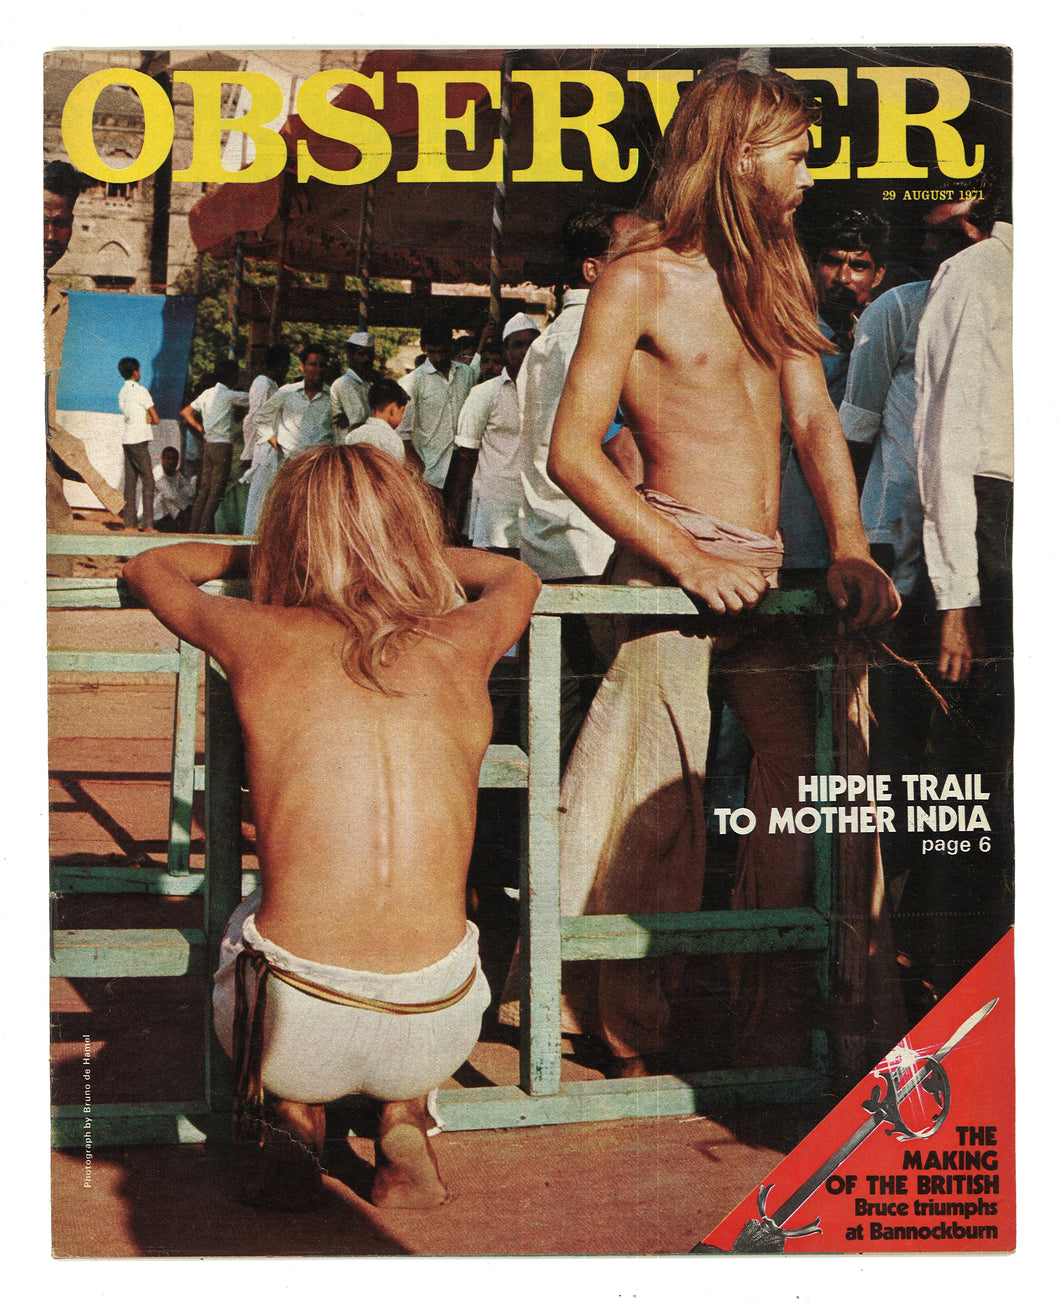 Observer Aug 29 1971